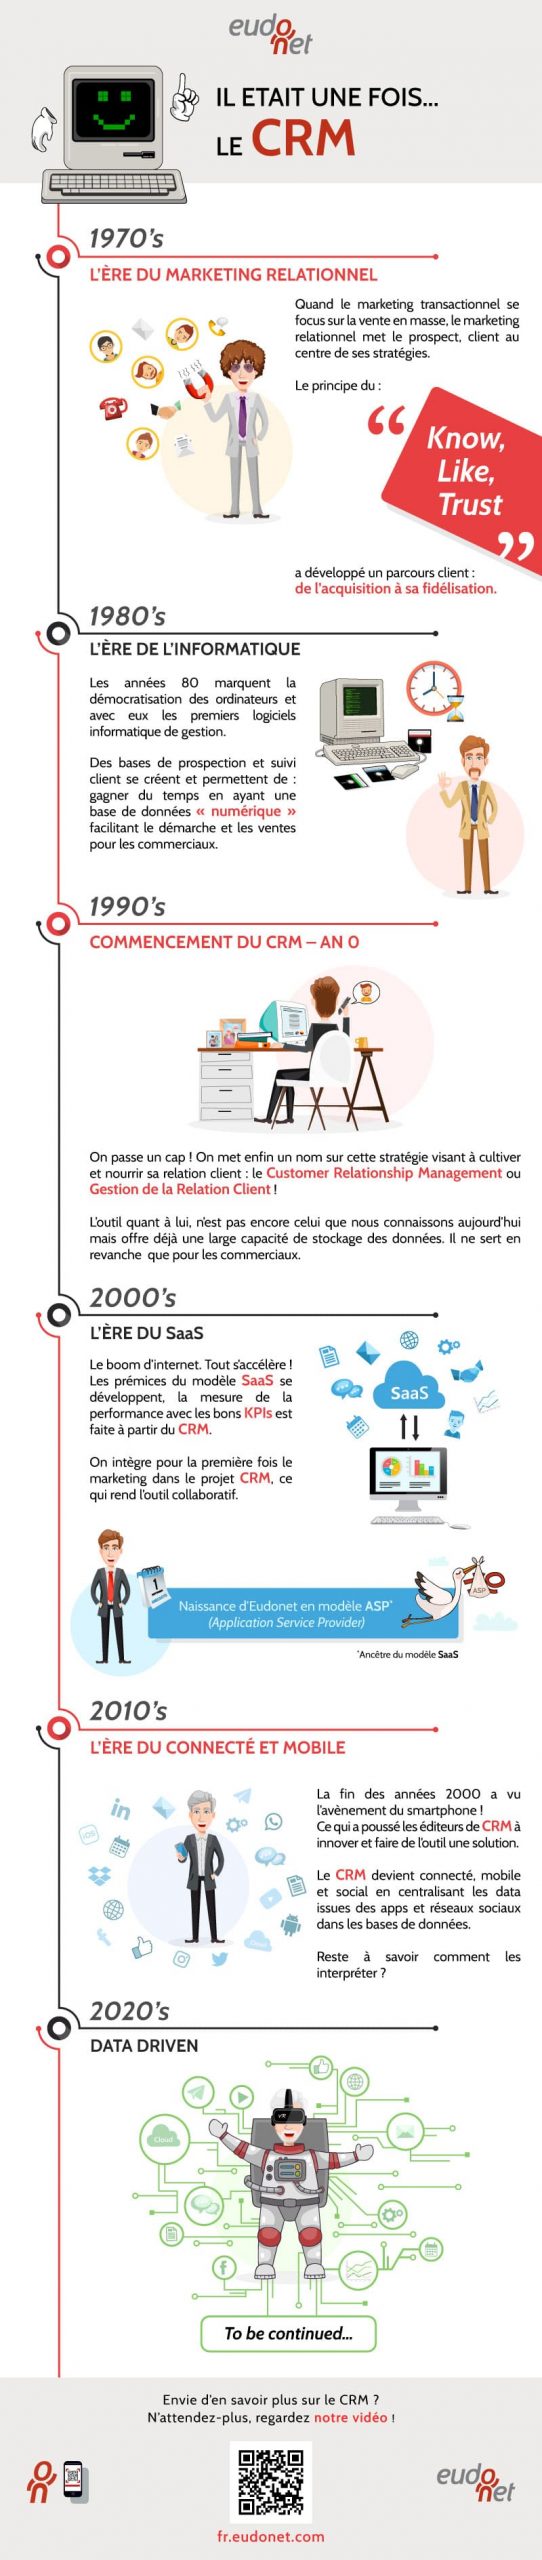 Infographie Histoire du CRM